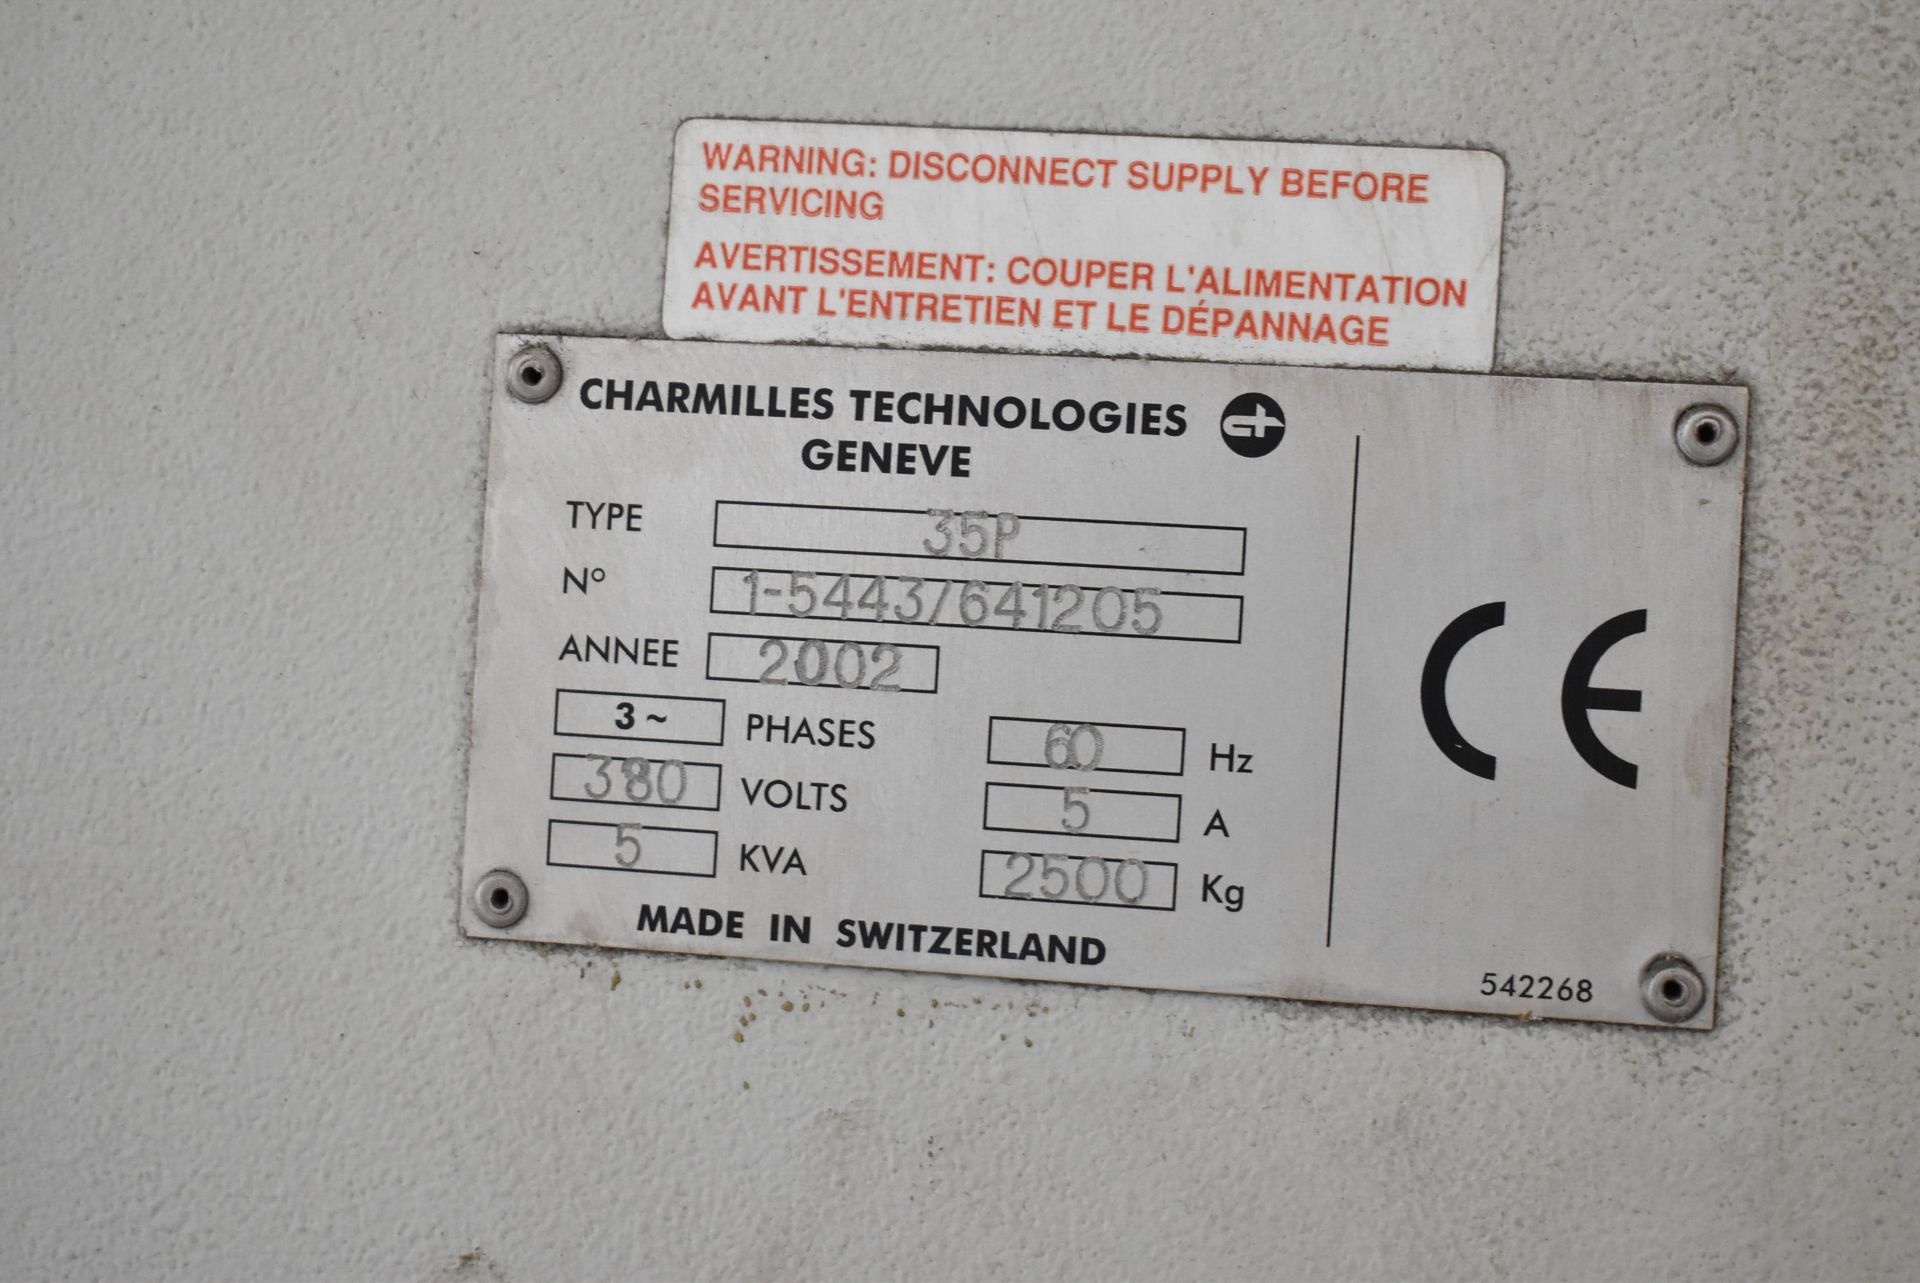 CHARMILLES (2002) ROBOFORM 35P CNC WIRE EDM WITH CNC CONTROL, PENDANT CONTROL, 16" X 20" TABLE, - Image 22 of 23